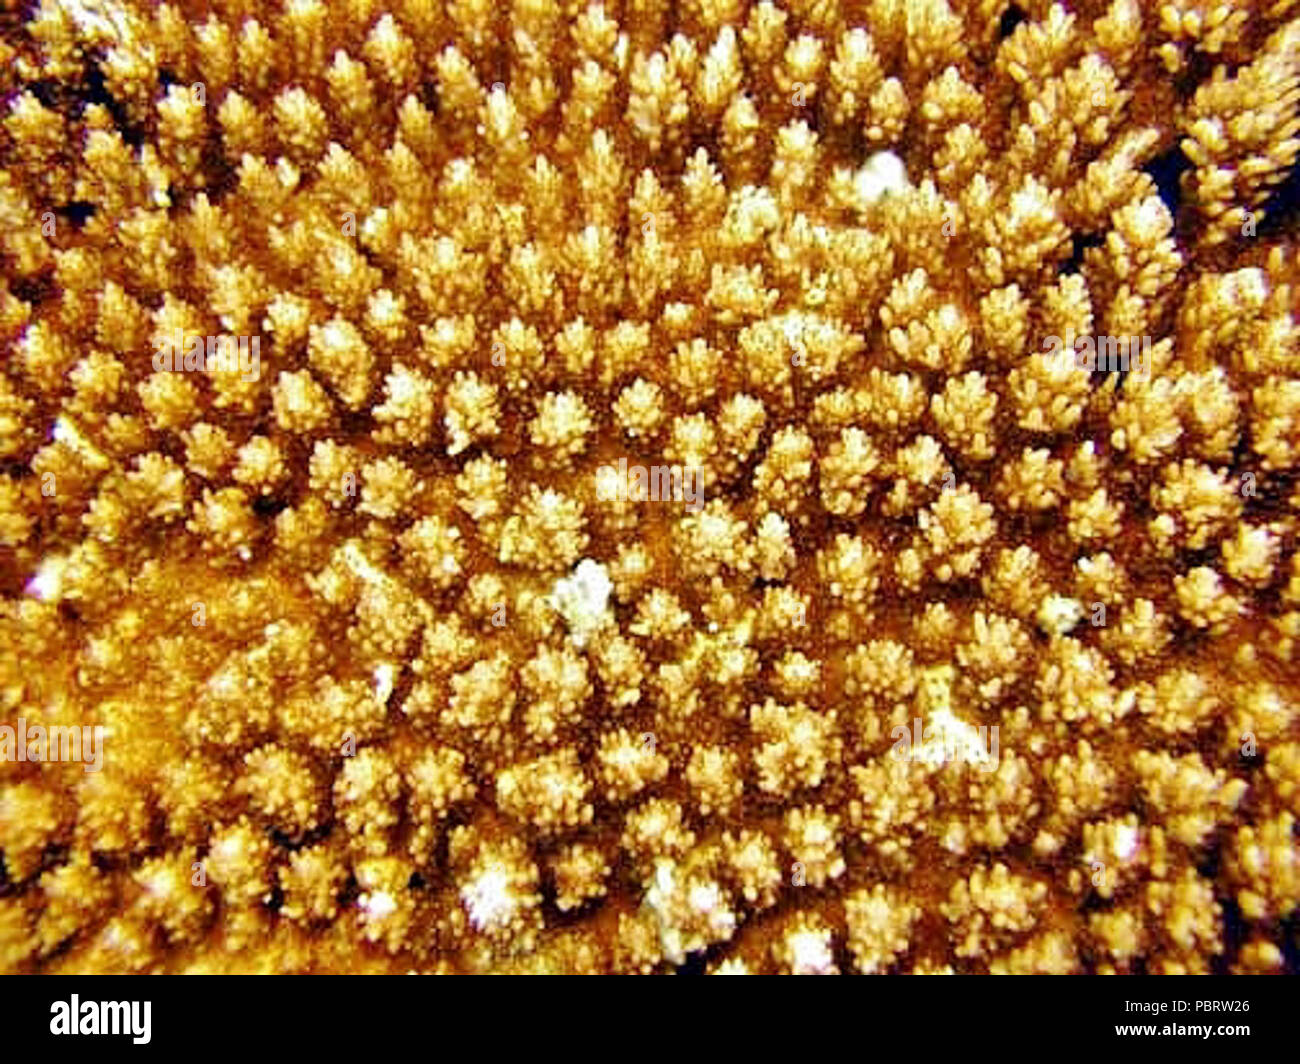 Acropora microclados coralitos 2. Stock Photo